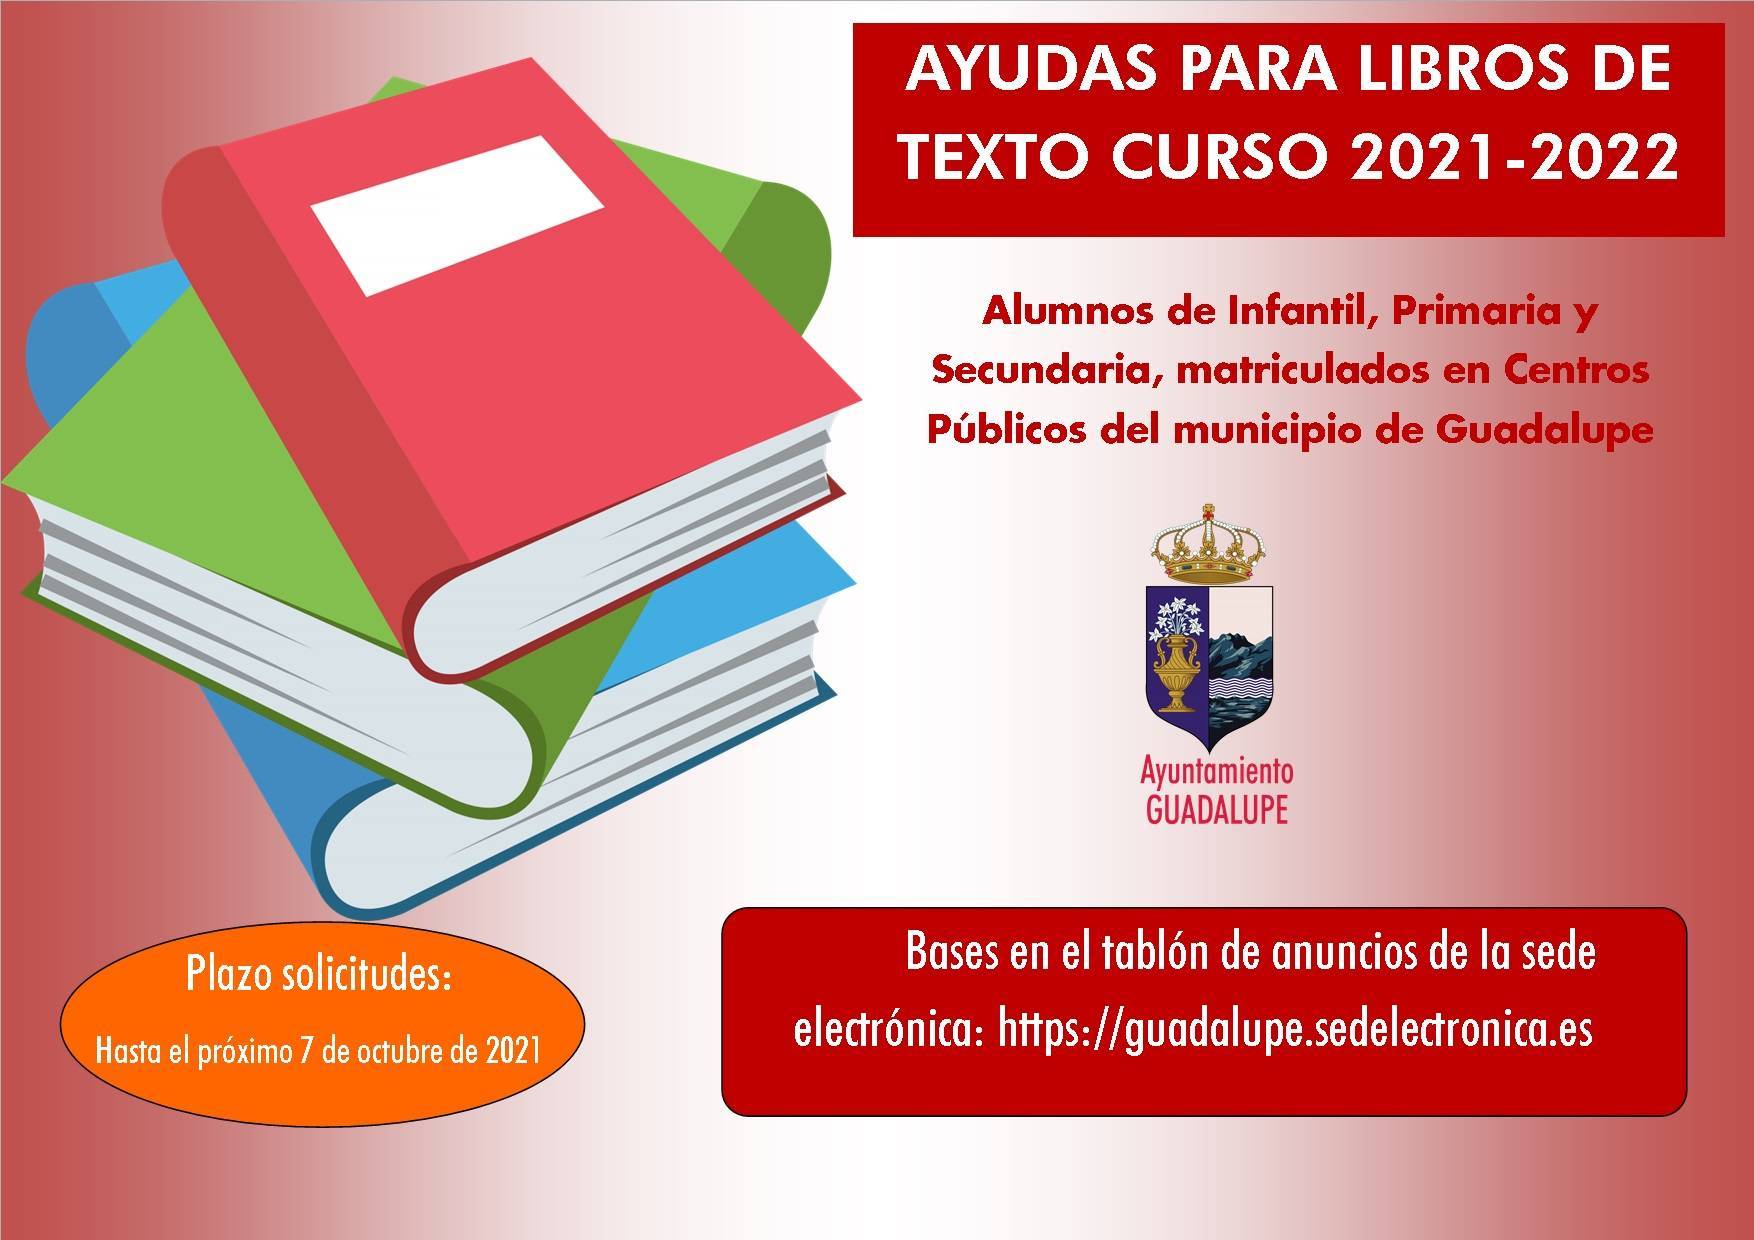 Ayudas para libros de texto curso 2021-2022 - Guadalupe (Cáceres) 1